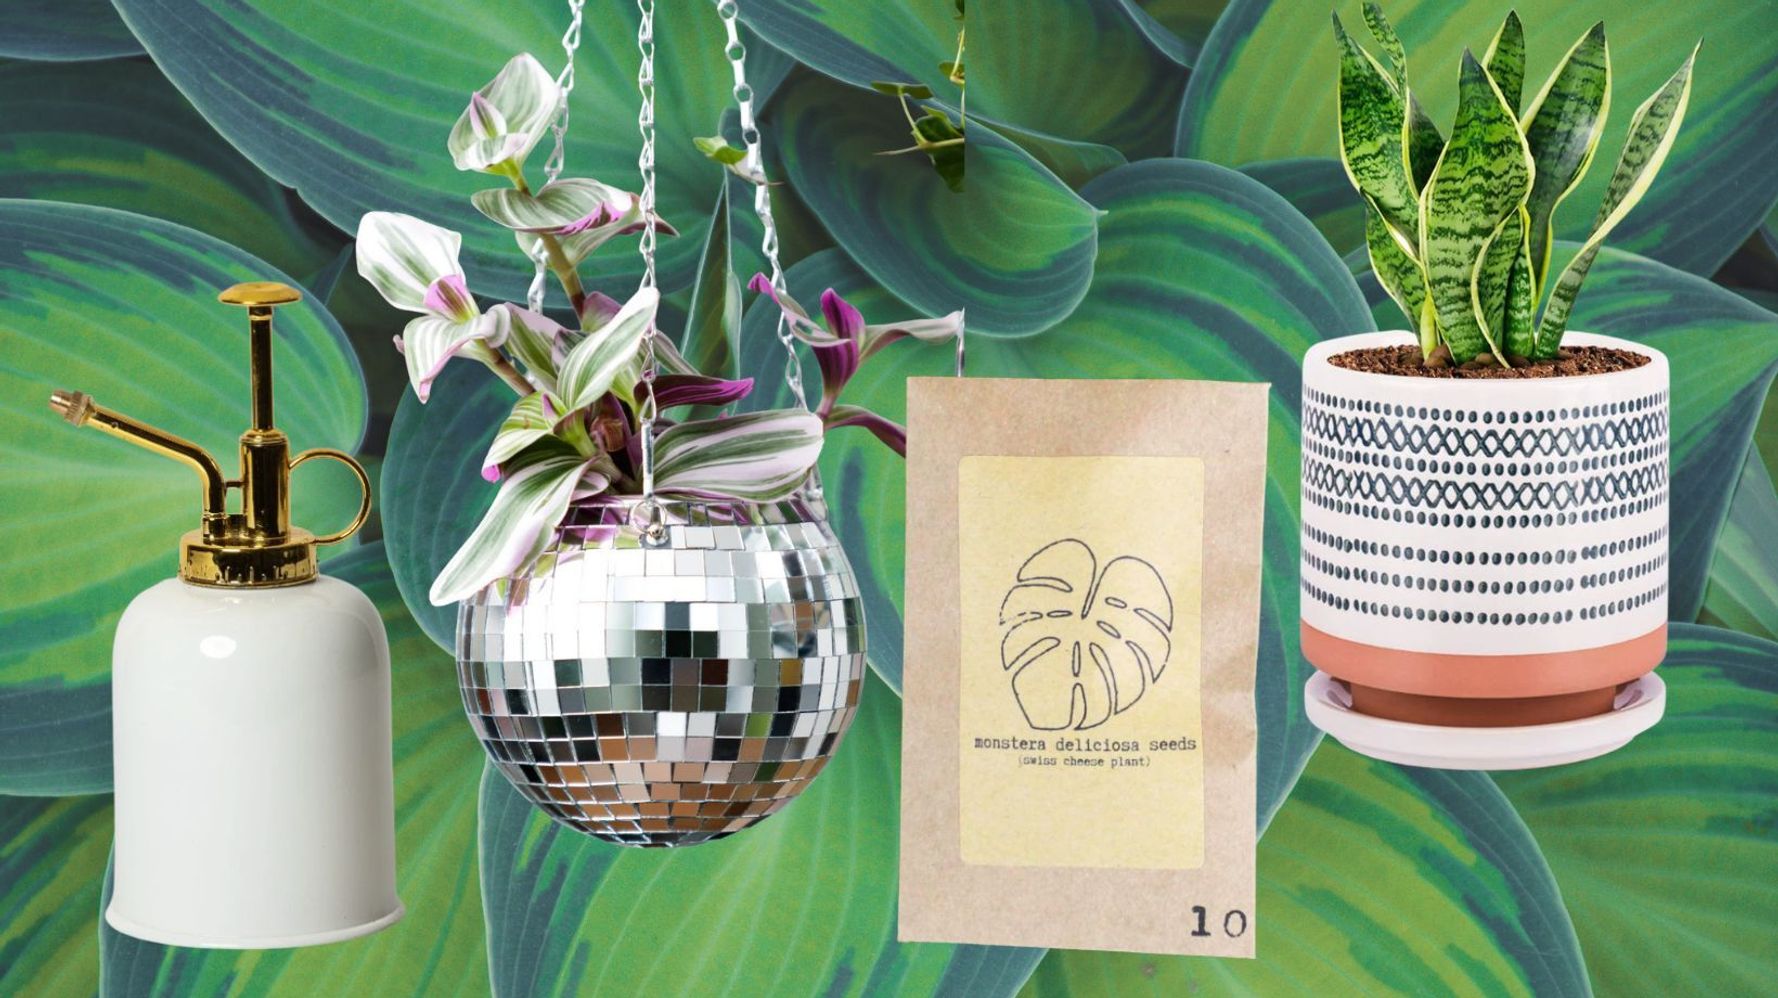 DIY Macrame Plant Hanger Kit Make Your Own Gardener Lovers Gift  Personalised Colours 